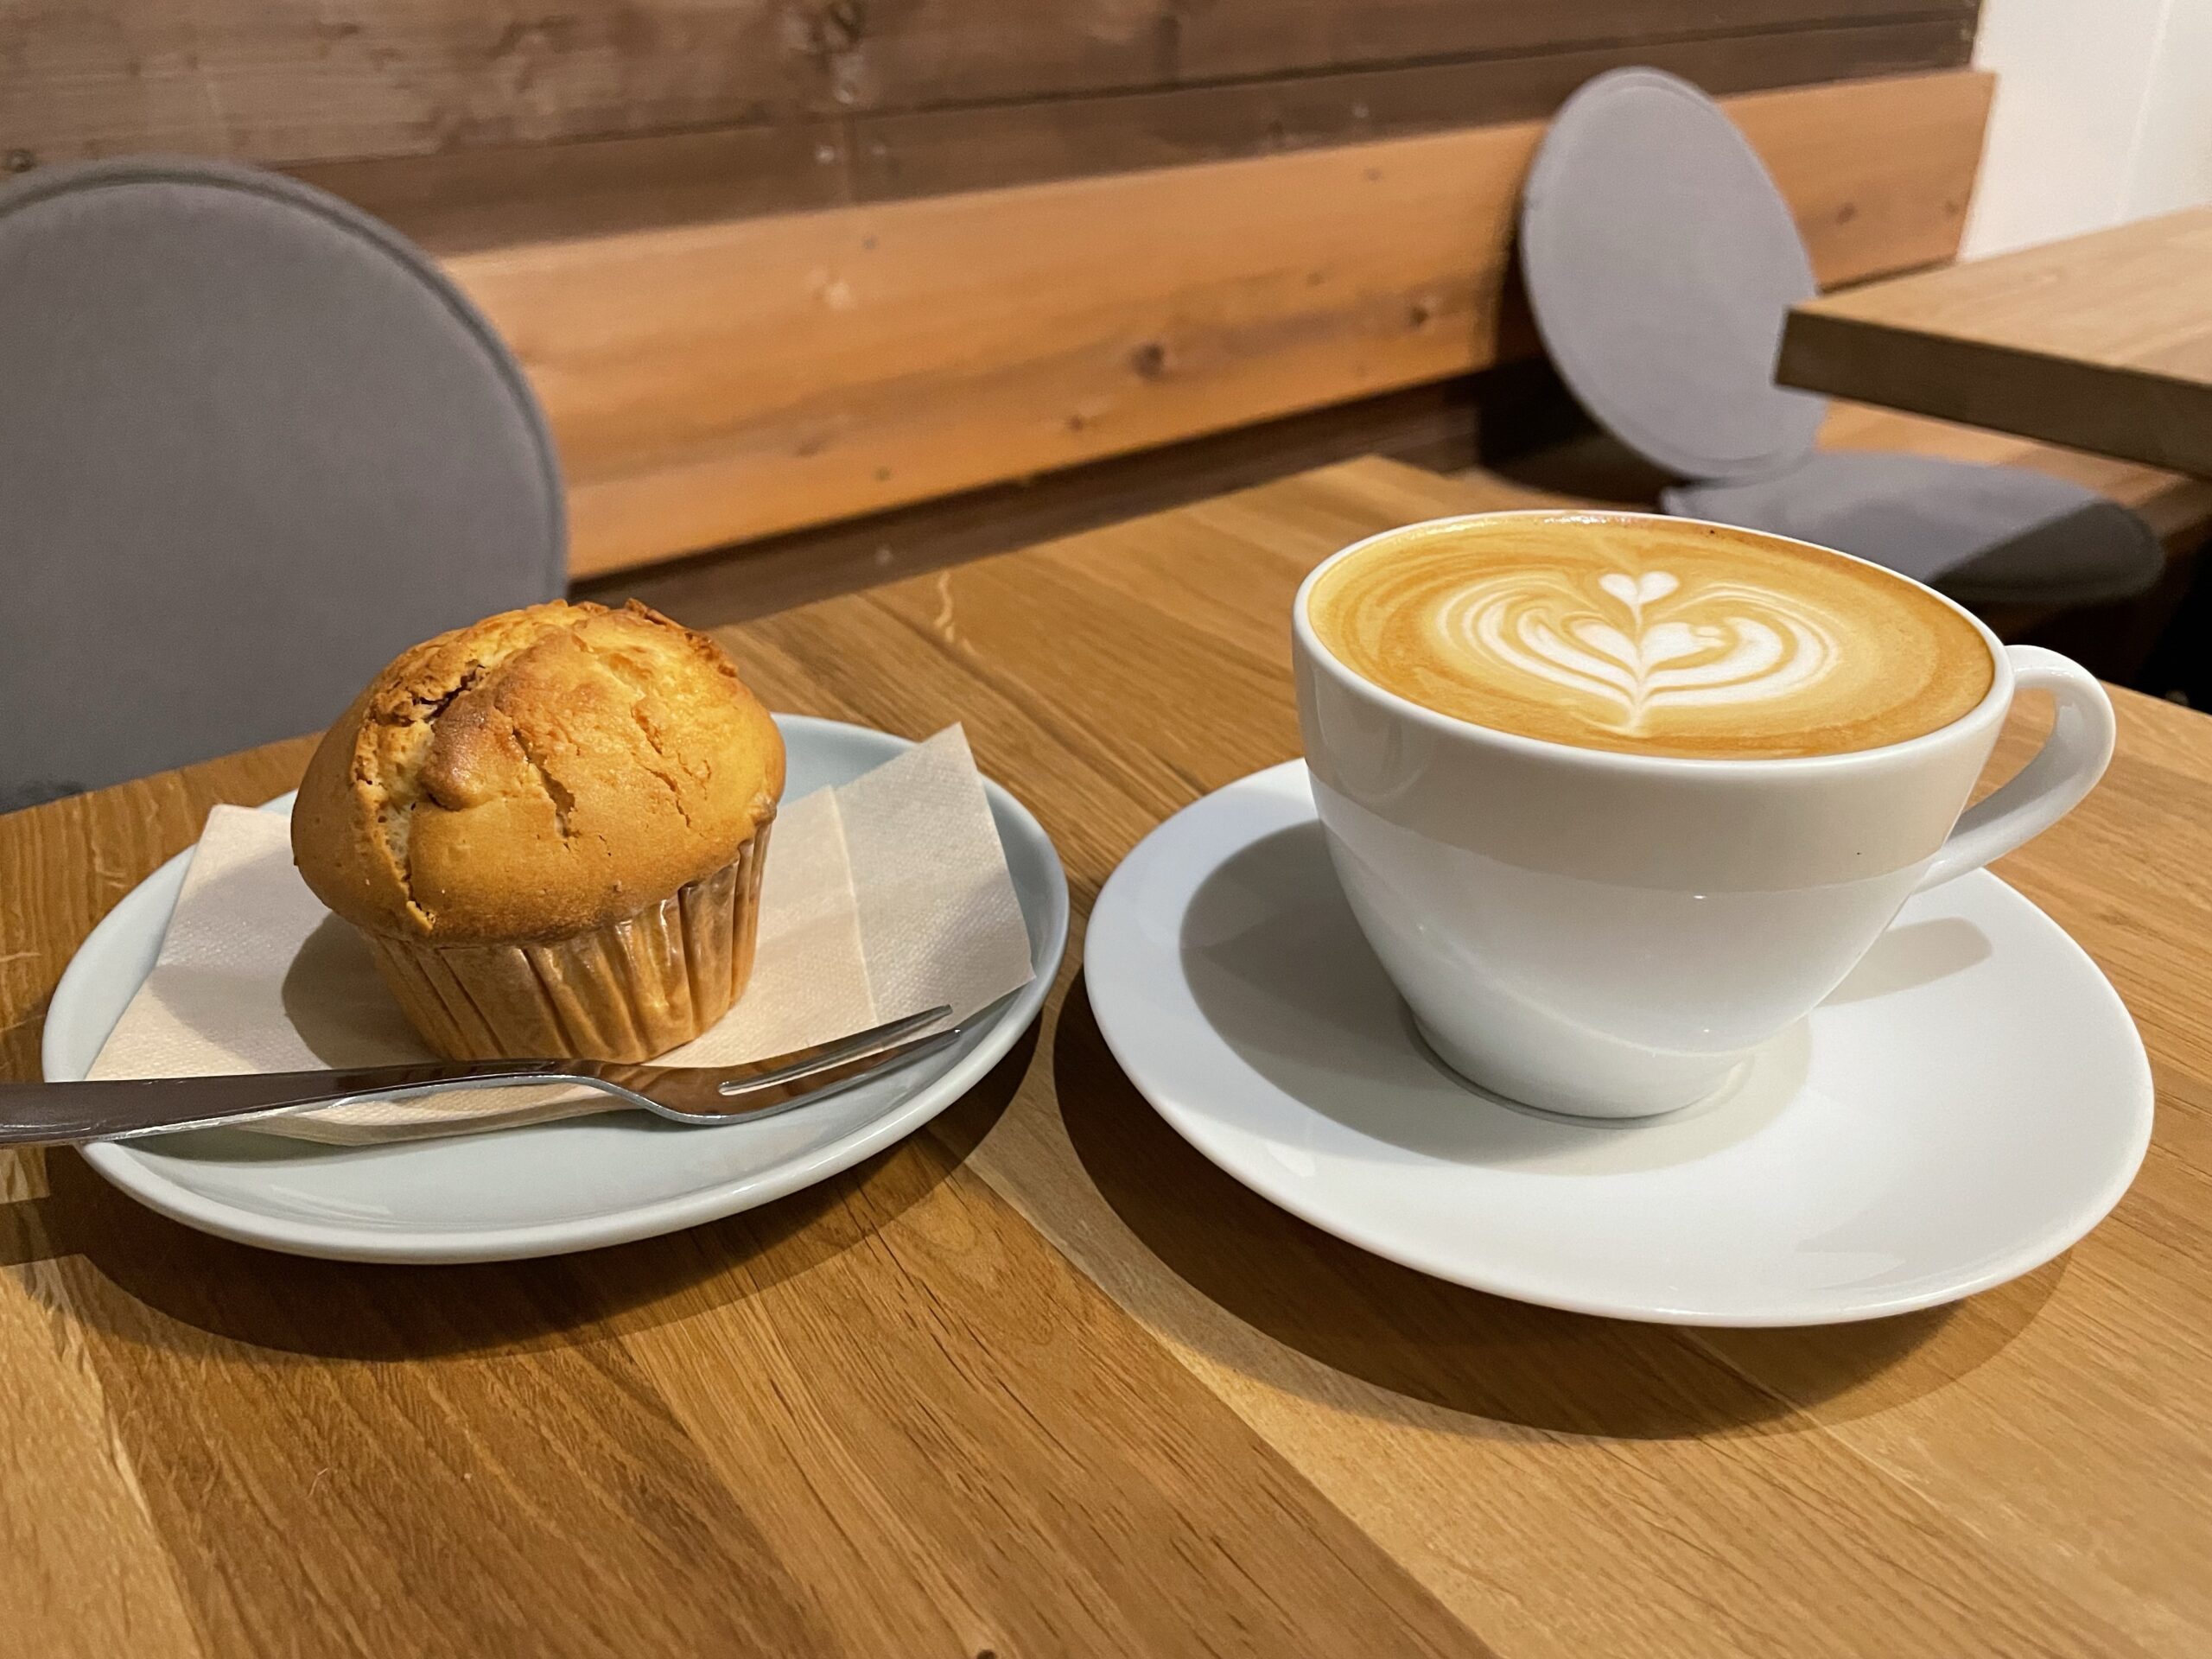 【元町】『ラウンド ポイント カフェ』平日は朝7時からオープン、1人作業にぴったりのカフェ